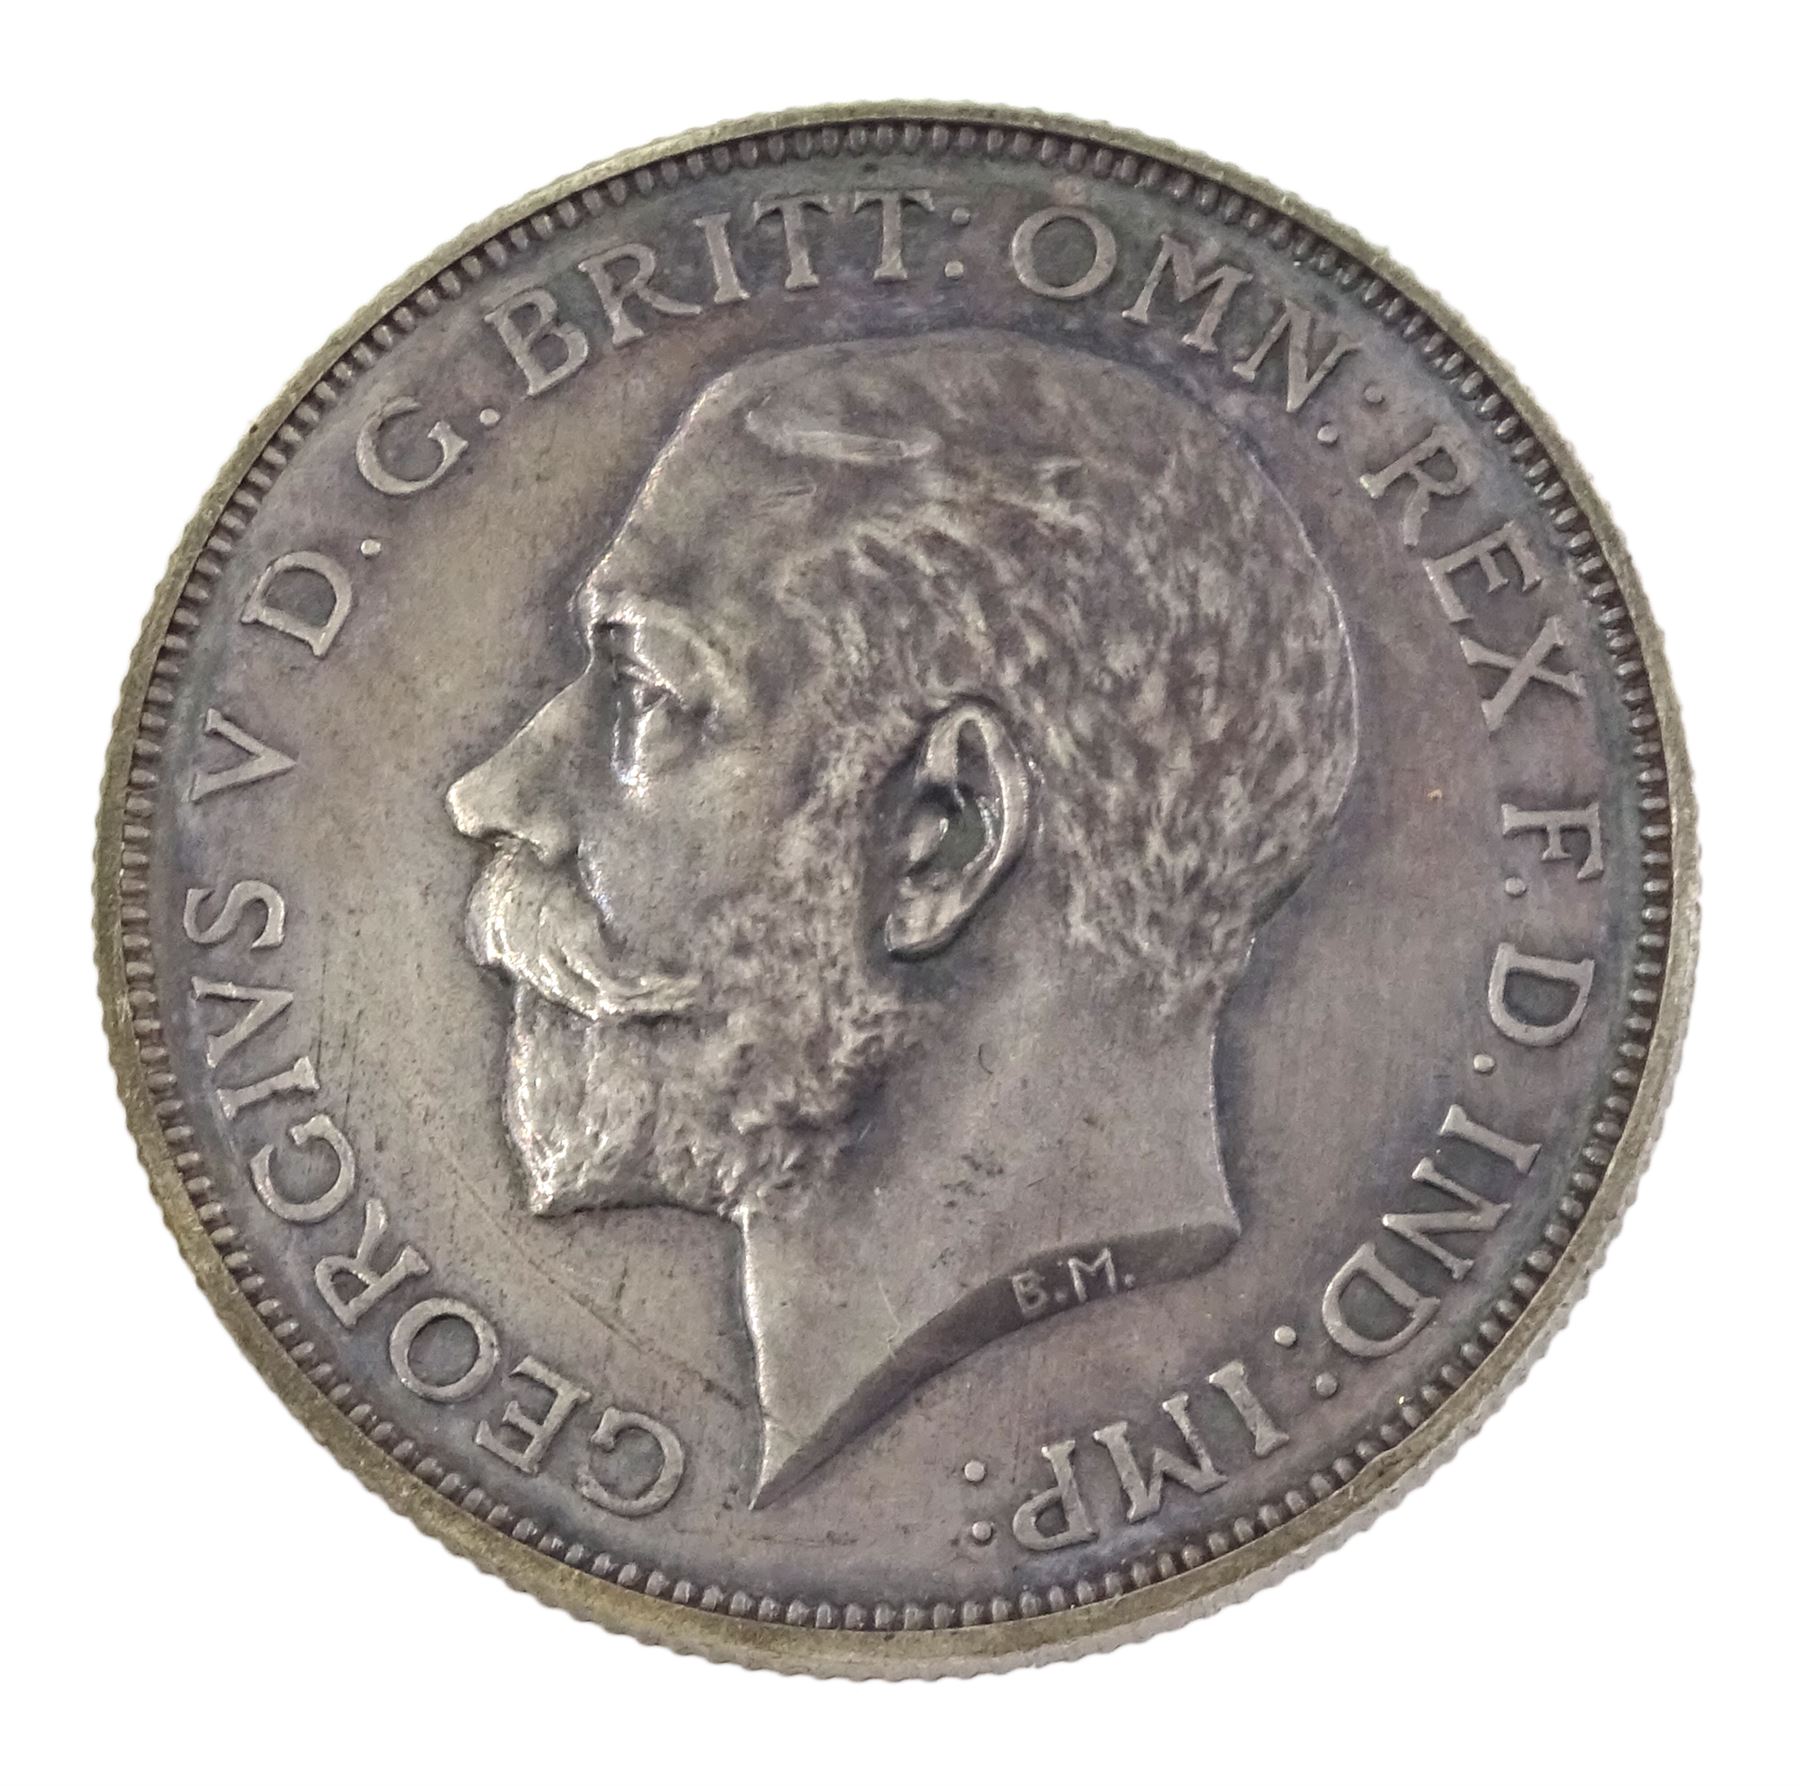 King George V 1911 proof short coin set - Image 12 of 24